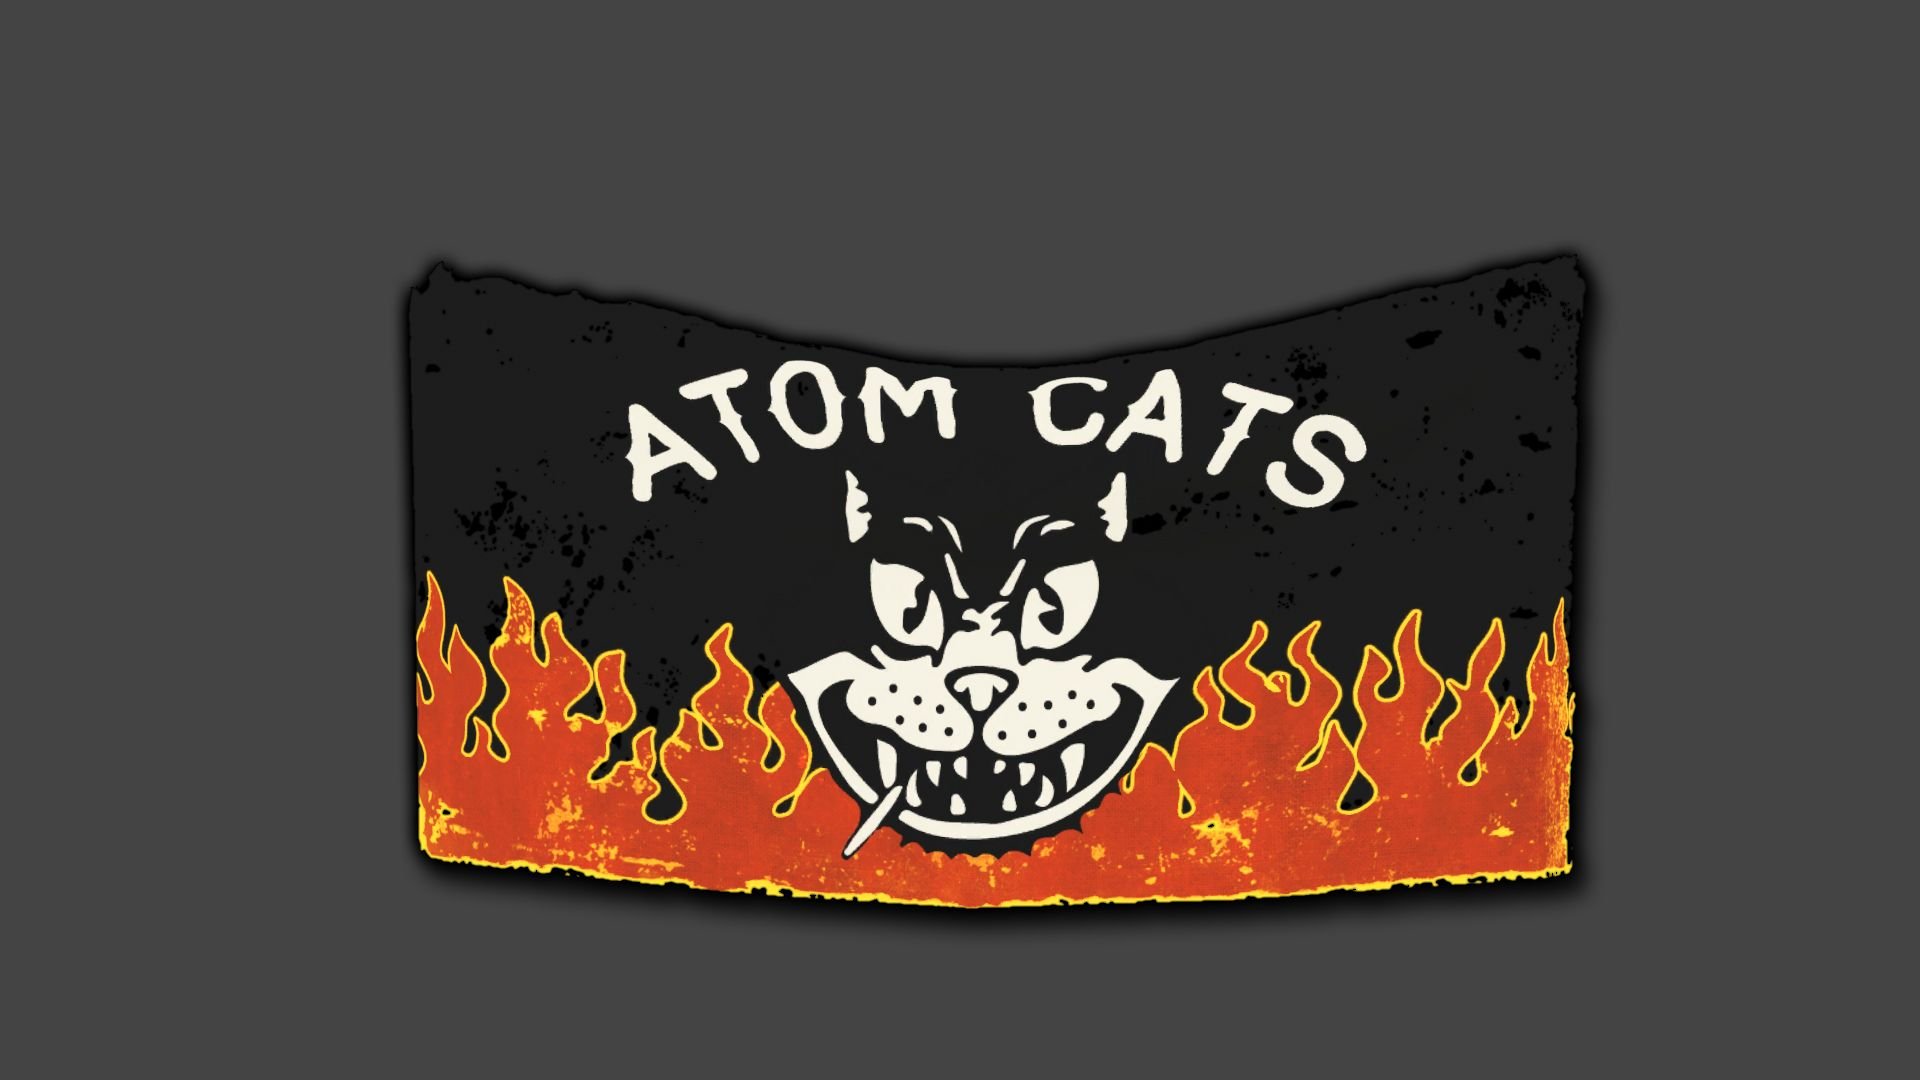 атомные коты fallout 4 карта фото 71